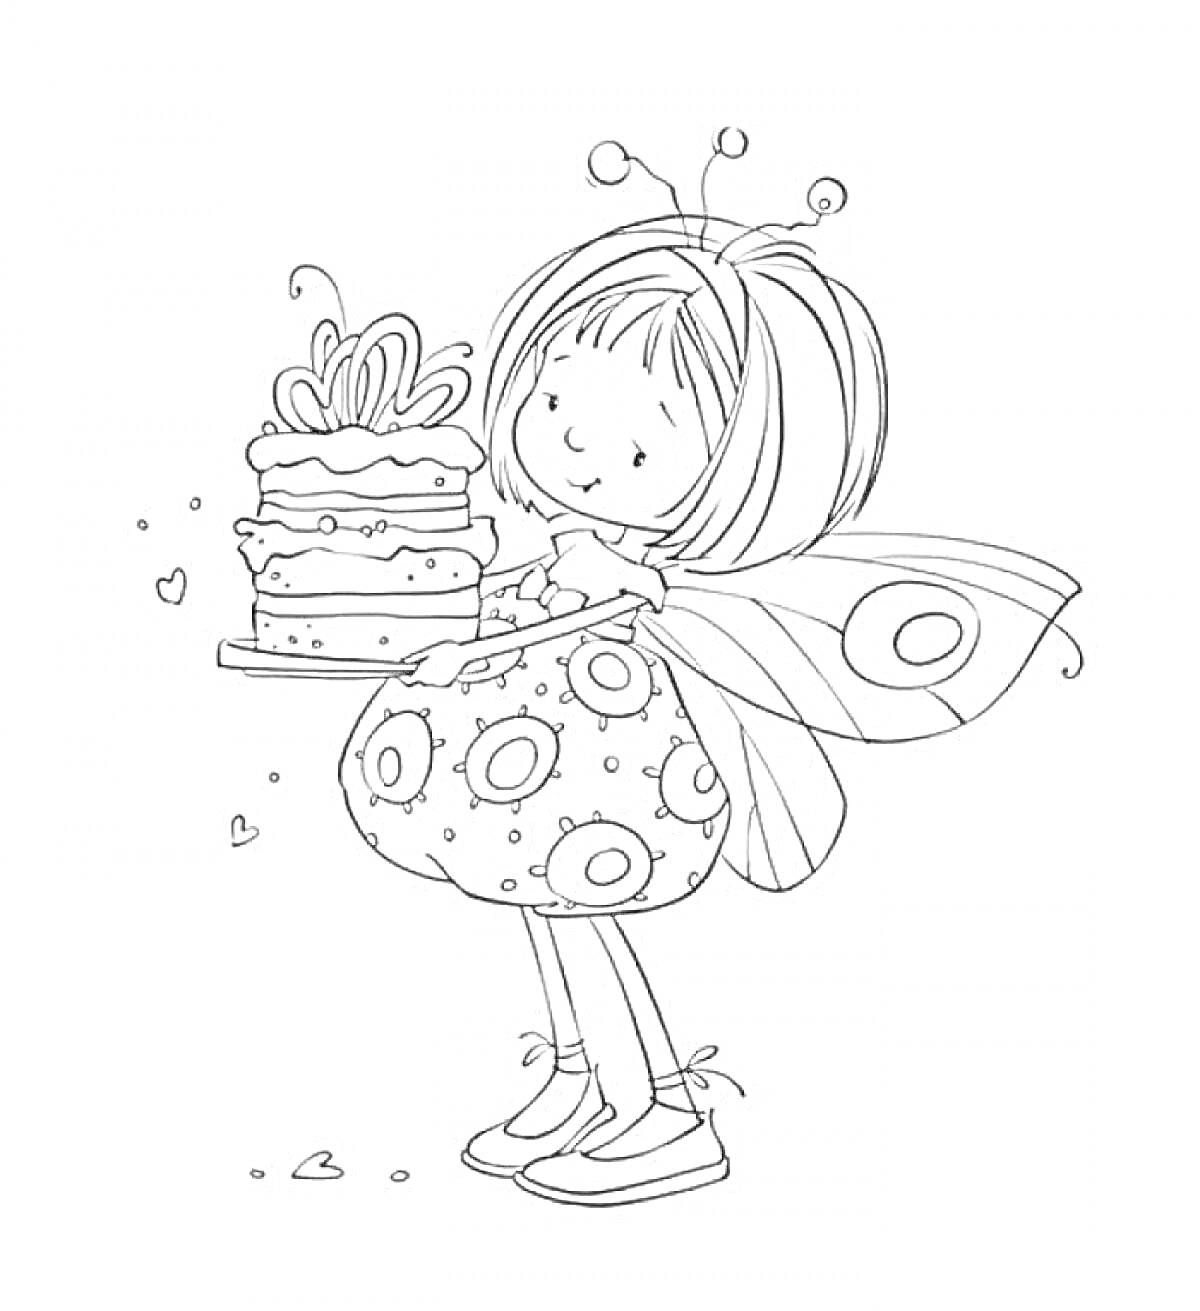 Фея с крыльями, держащая торт